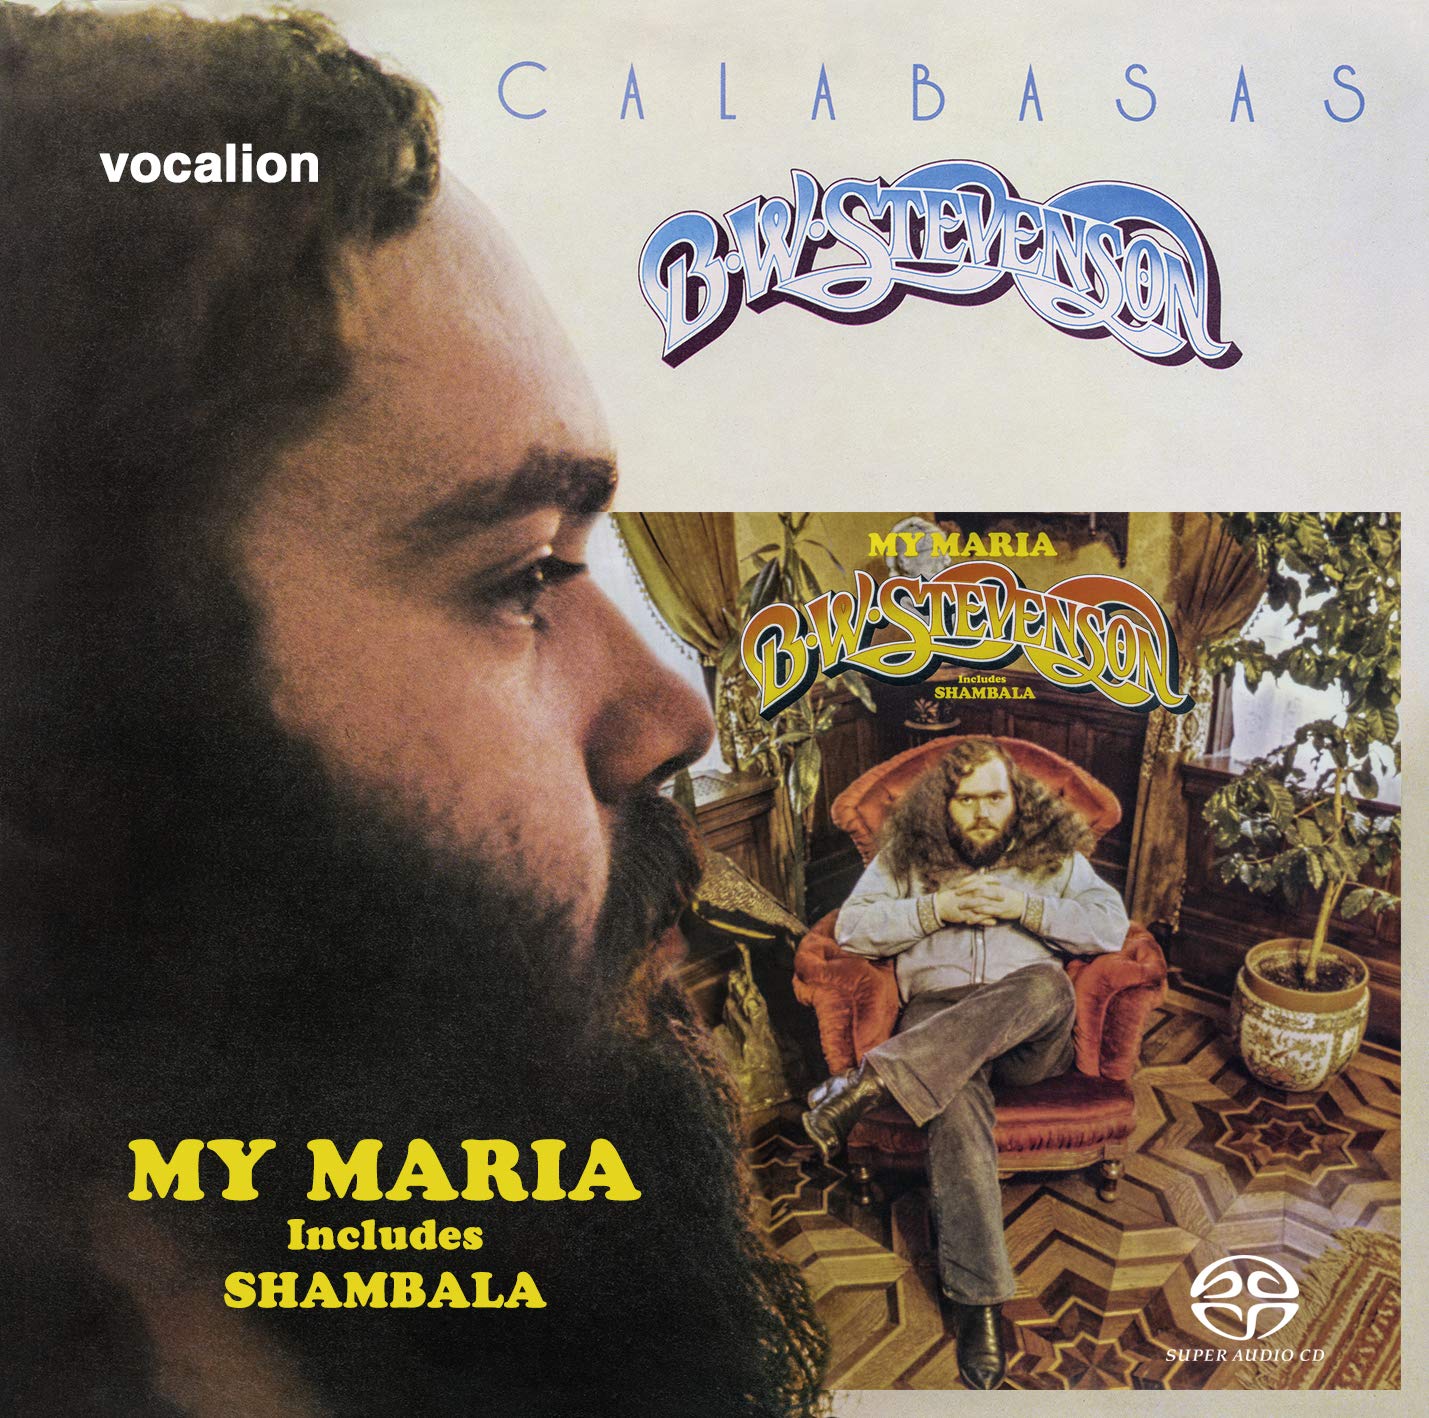 B.W. Stevenson – My Maria & Calabasas (1973 & 1974) [Reissue 2019] MCH SACD ISO + Hi-Res FLAC